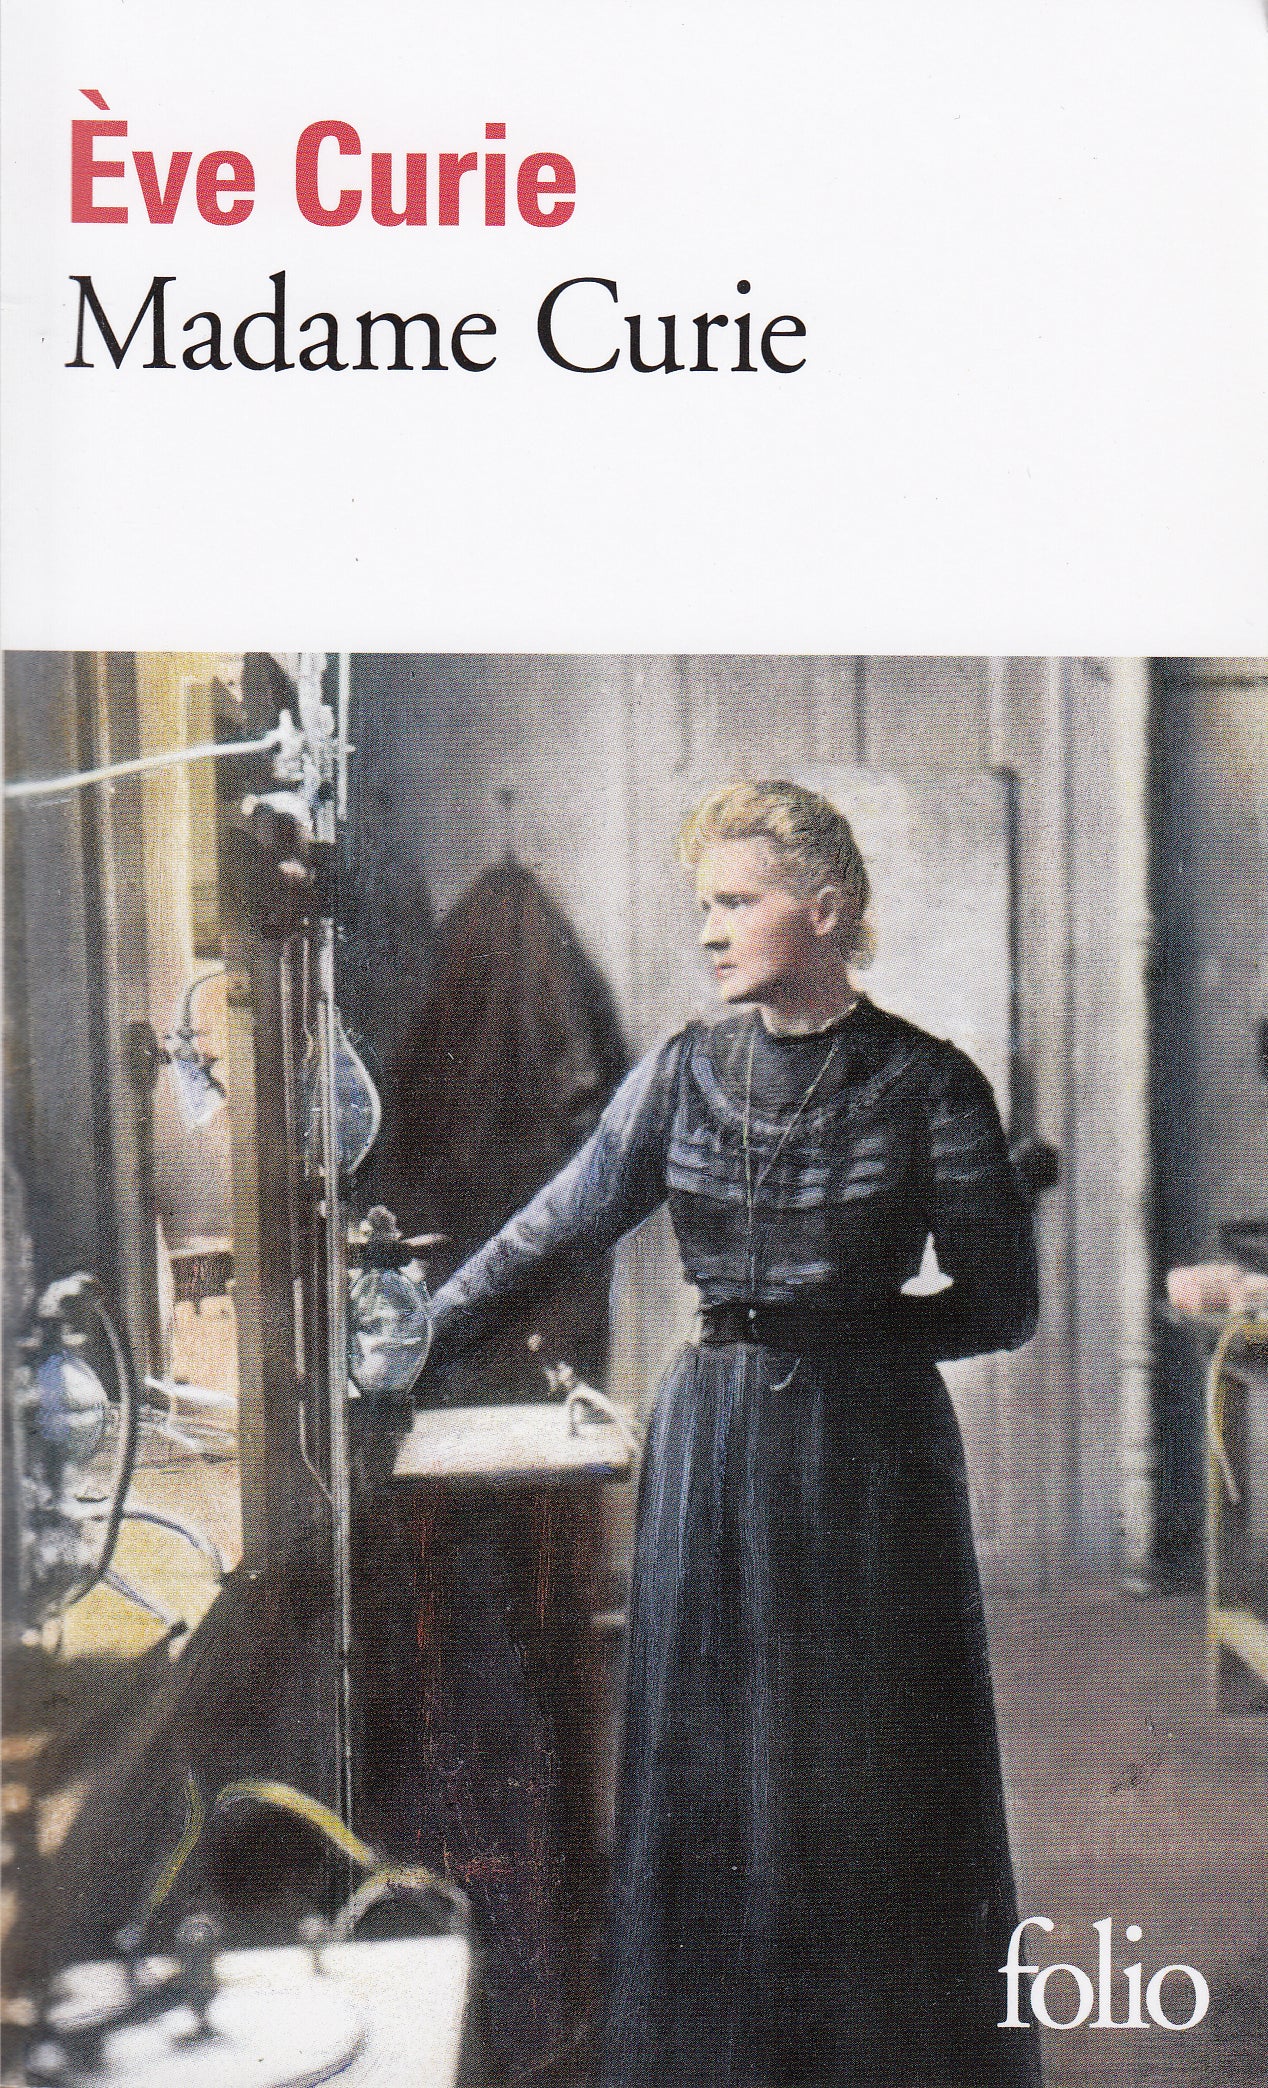 Madame Curie - Scientific Curiosity